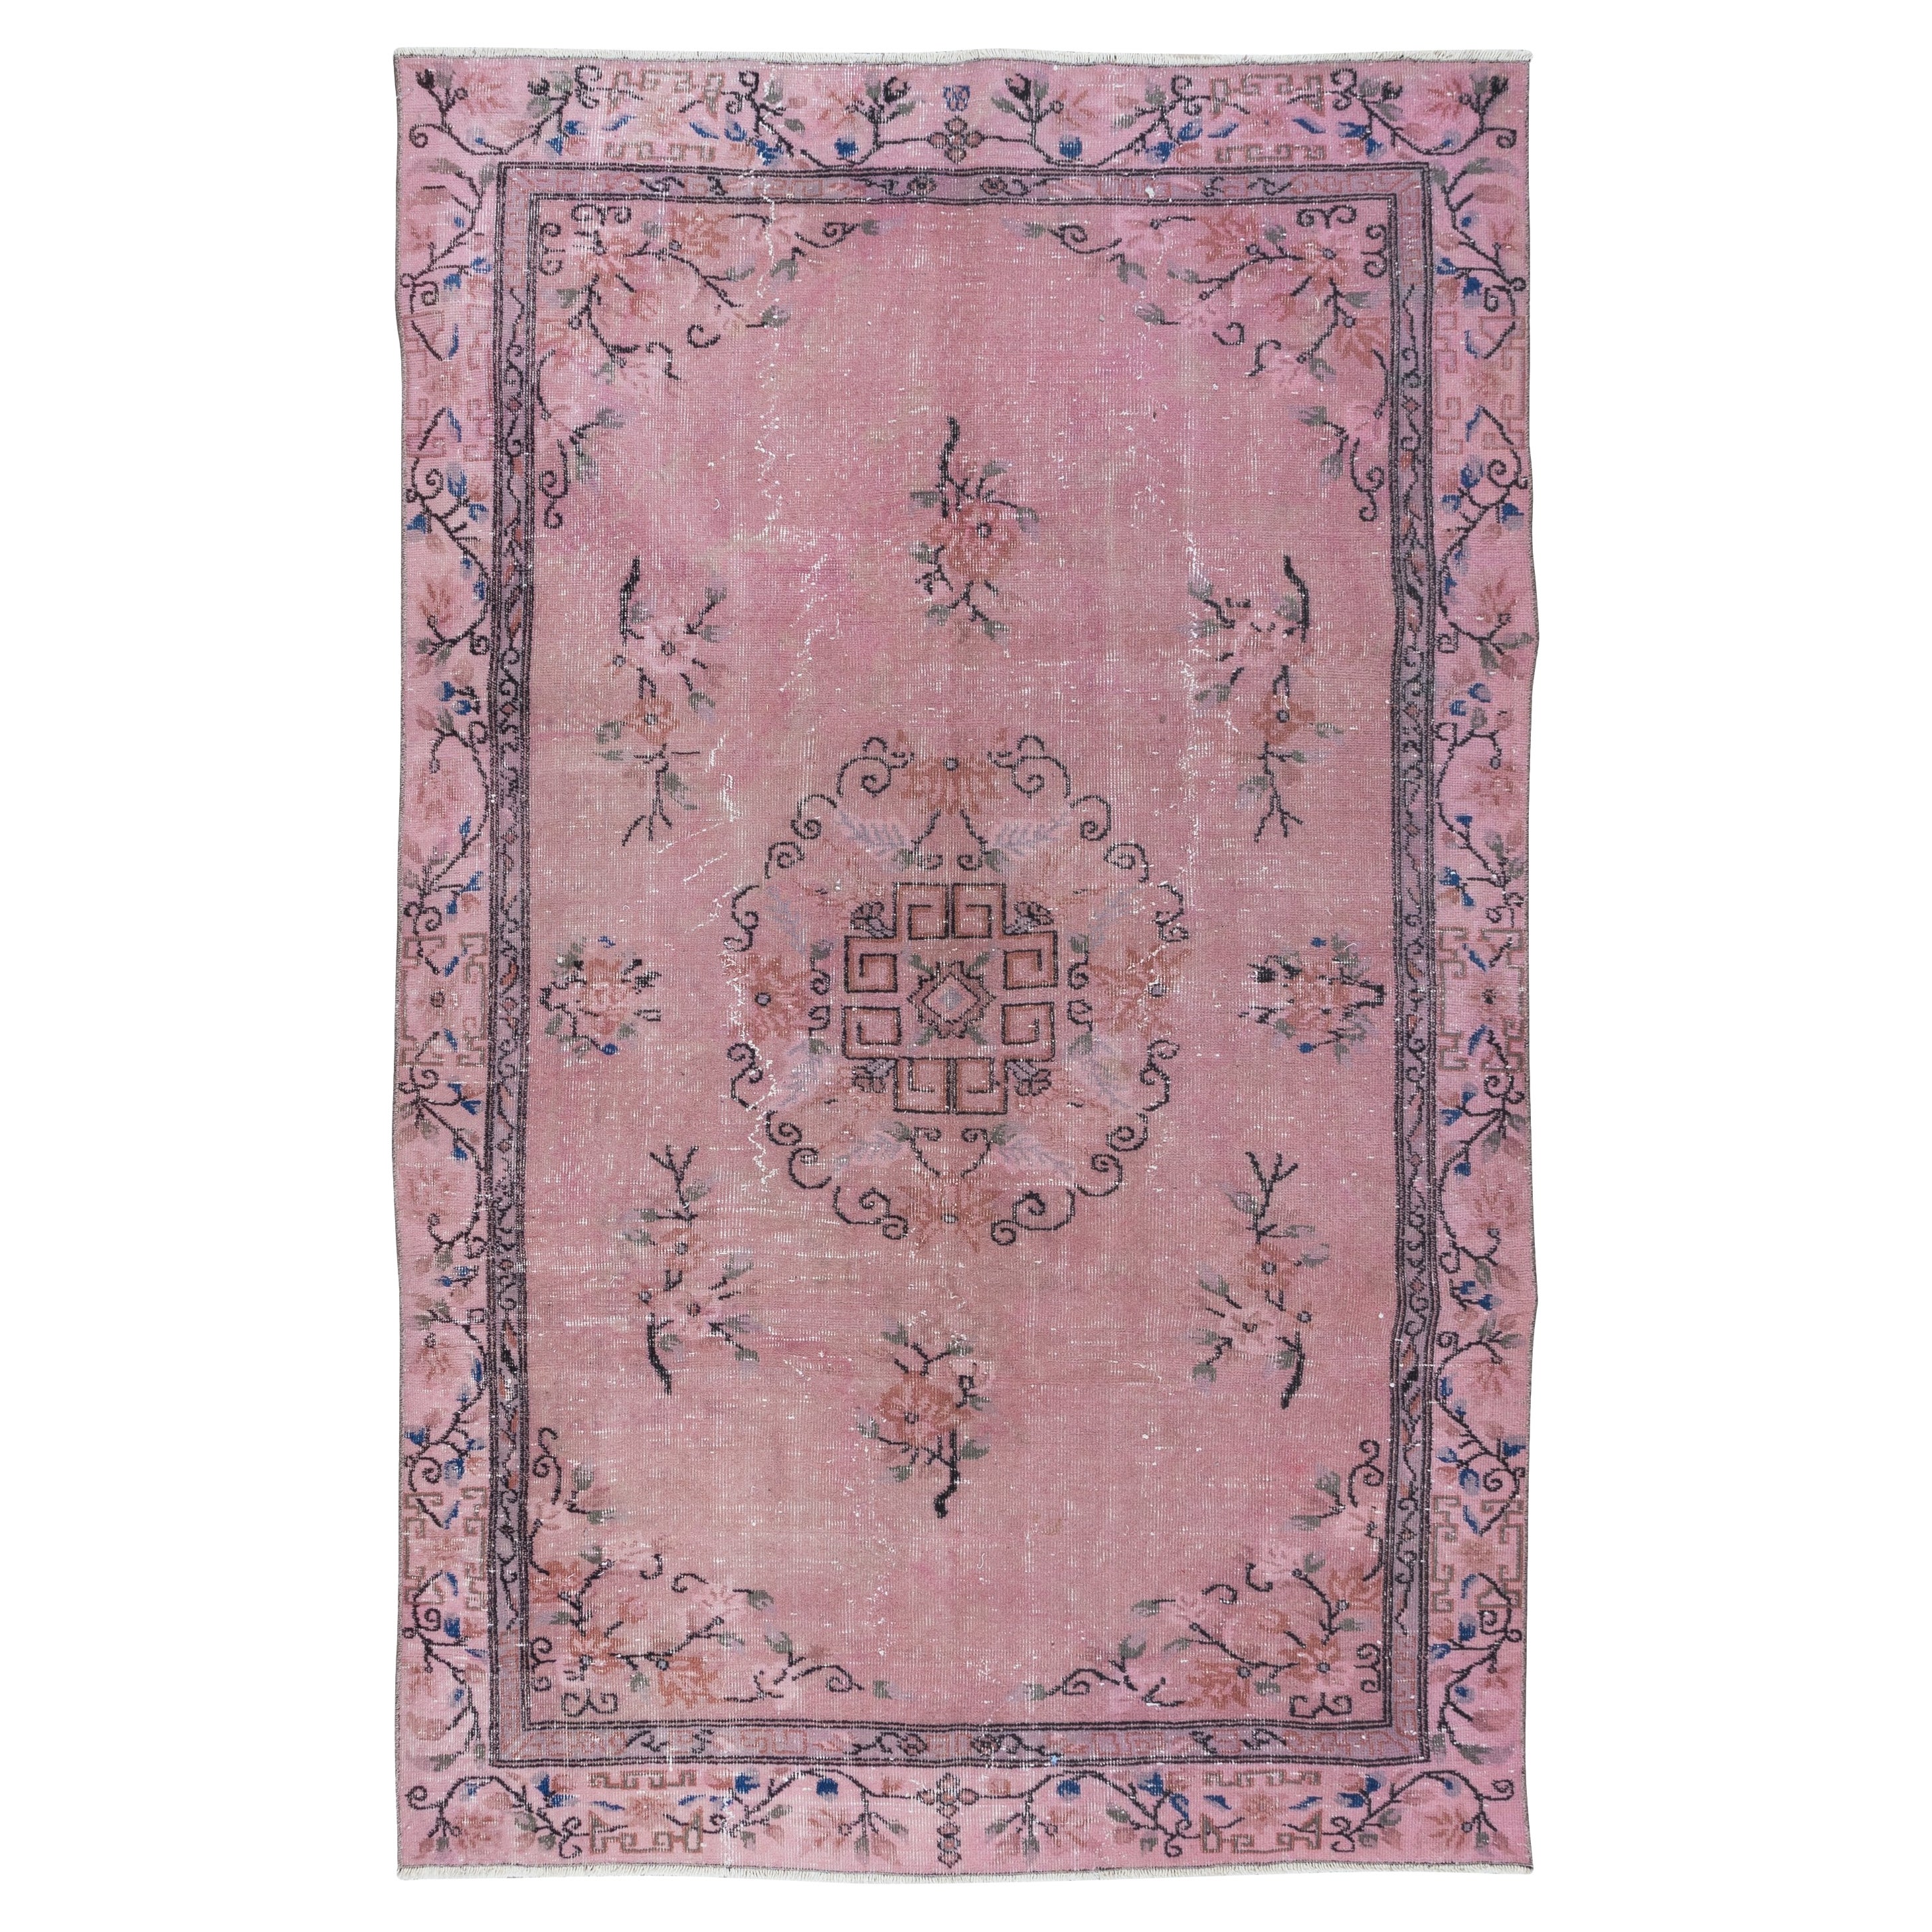 5.4x8.4 Ft Art Deco Chinese Design Light Pink Rug, Elegant Handmade Carpet